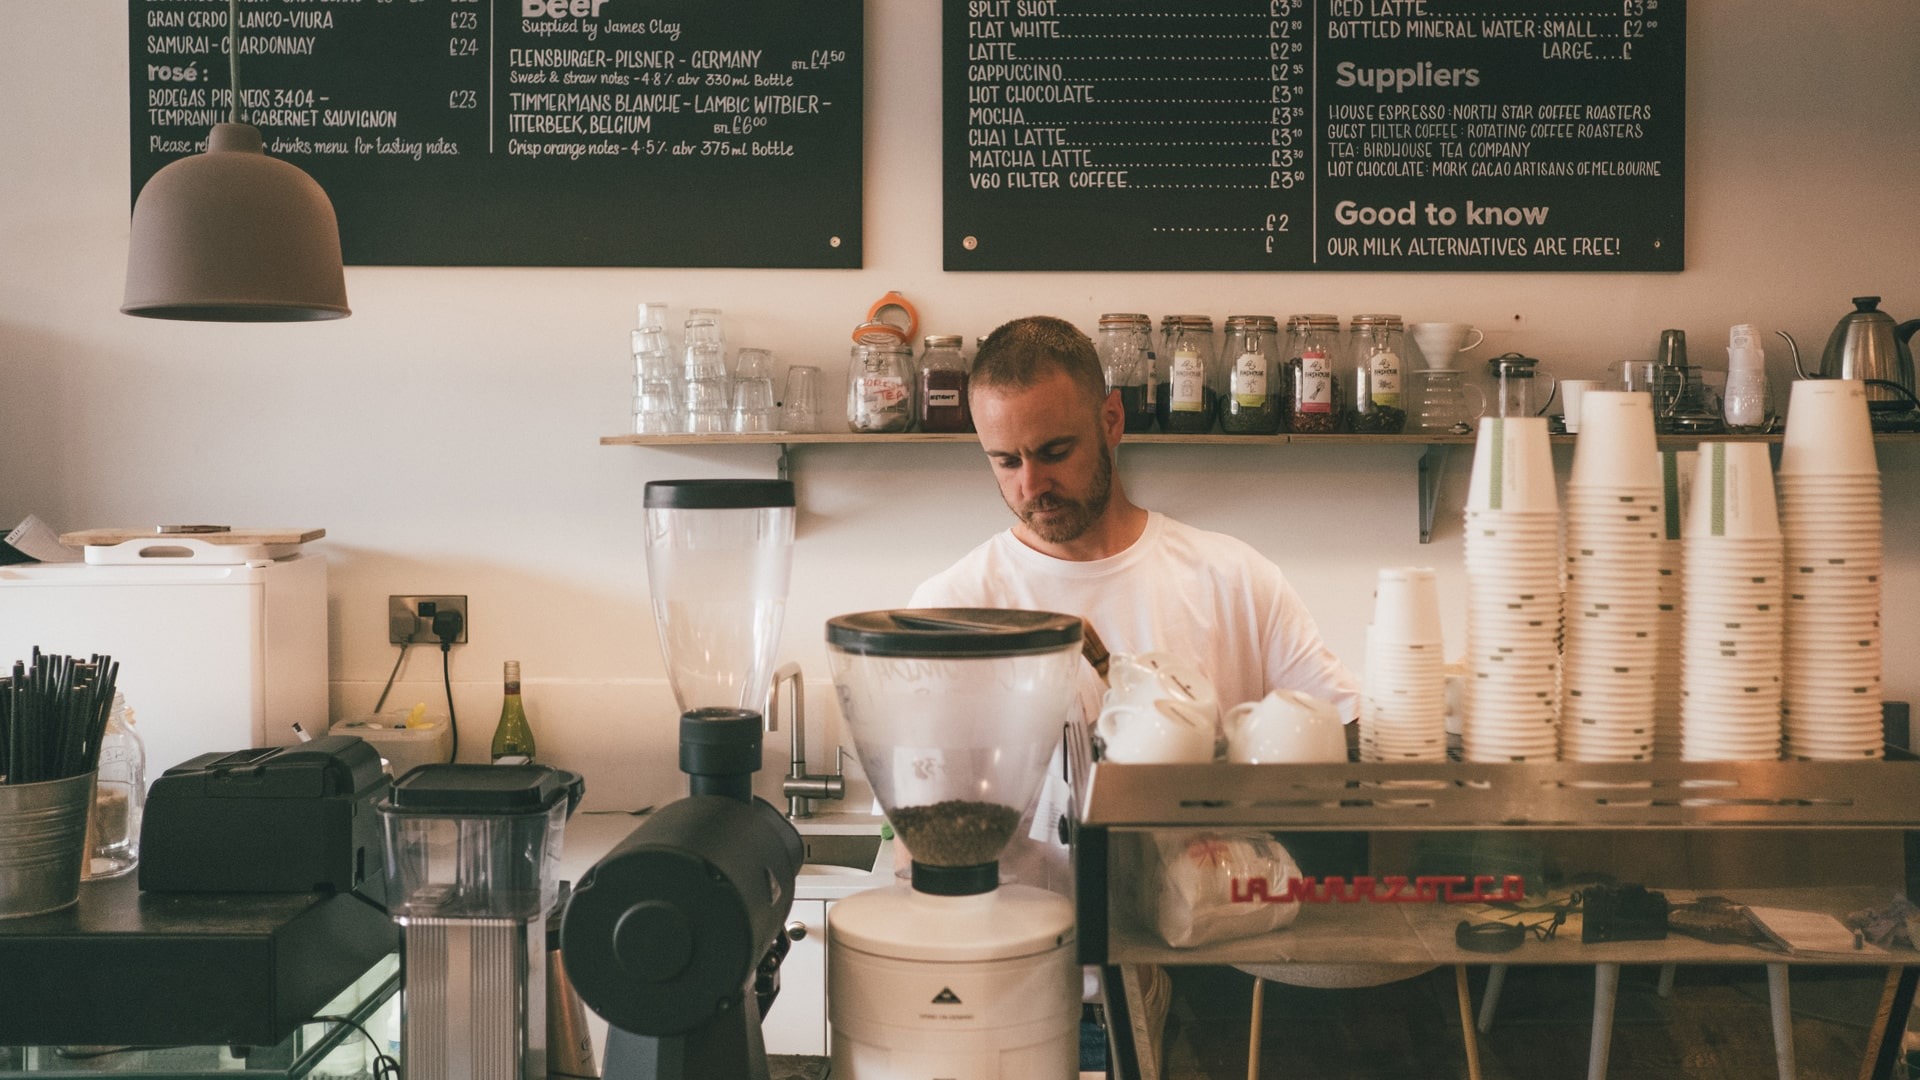 Muốn học cách làm nhân viên phục vụ quán cafe đúng chuẩn, bước đầu tiên cần nắm rõ quy trình phục vụ của quán